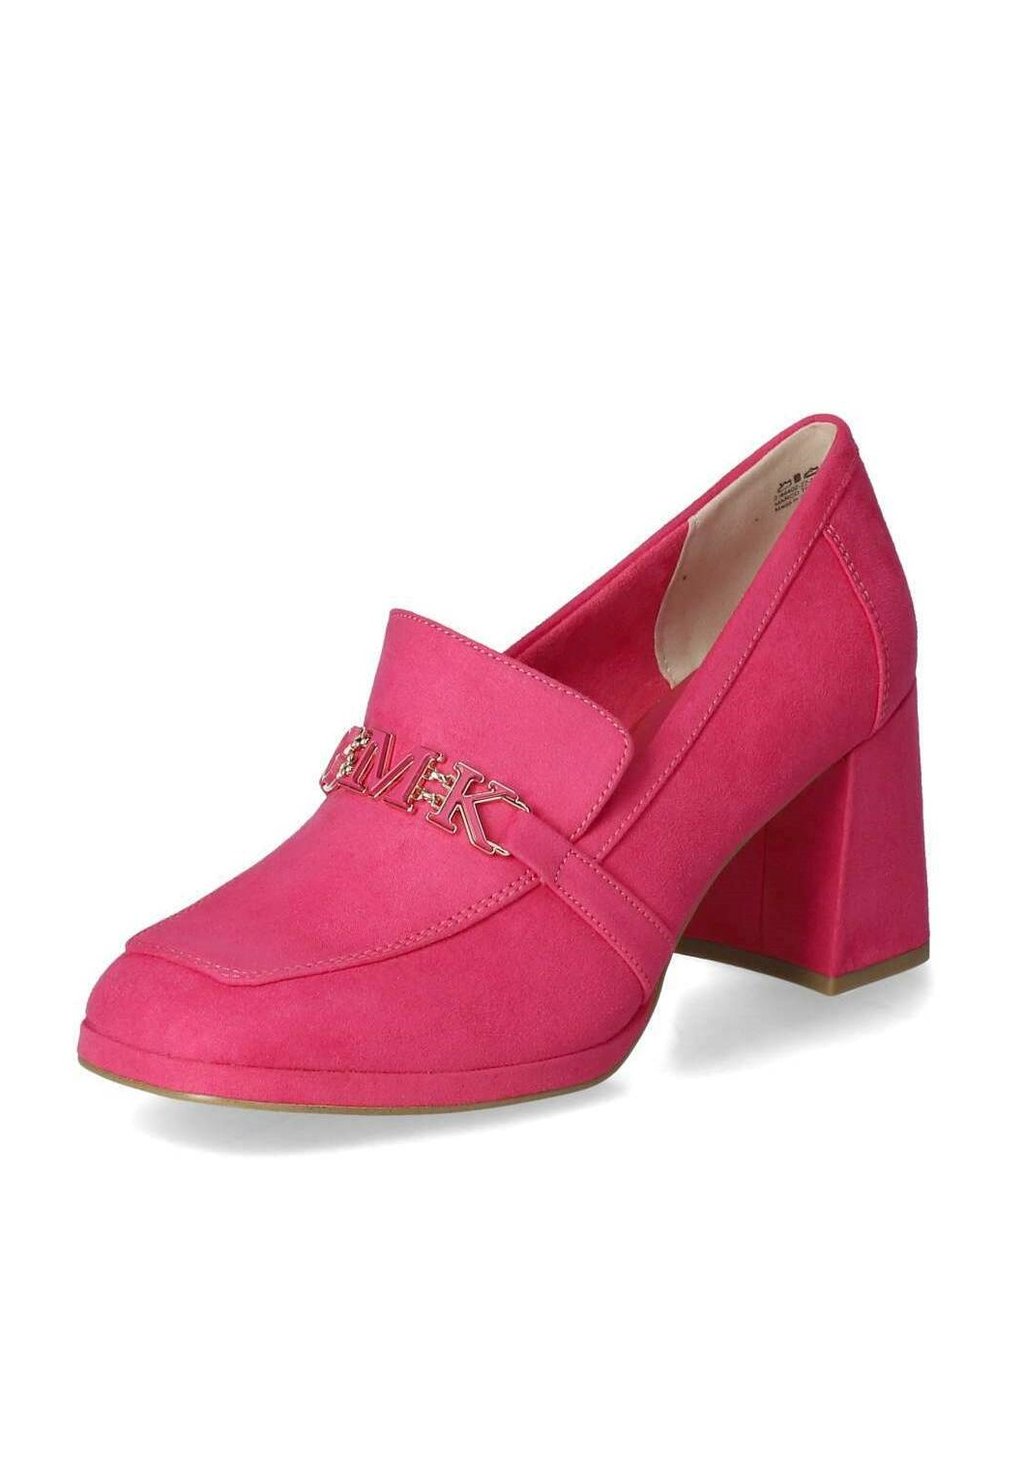 Туфли HOCHFRONT Marco Tozzi, цвет rose pink туфли на высоком каблуке marco tozzi цвет hot pink